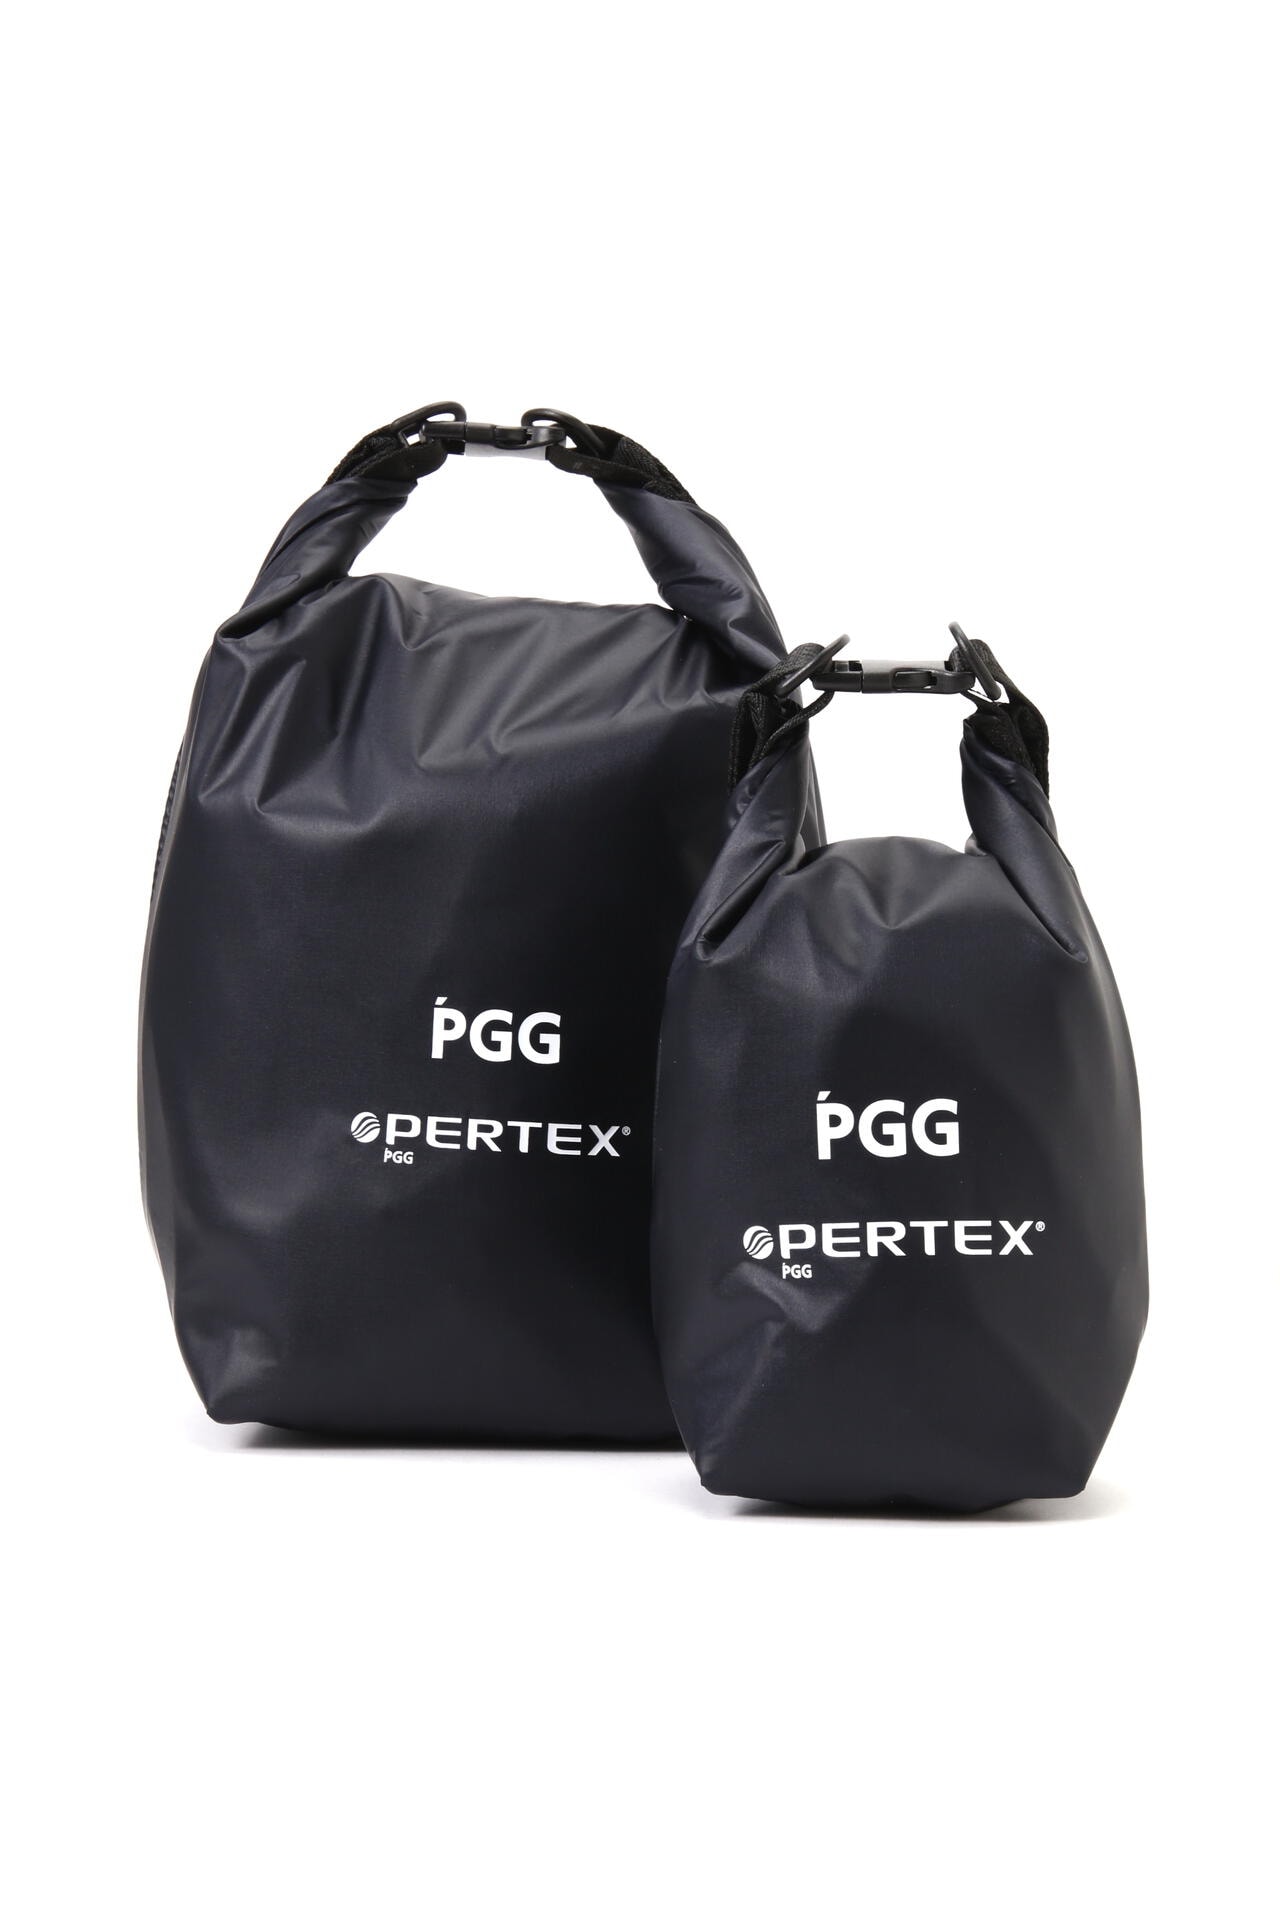 ピージージー】【PGG】PERTEX スタッフサック (UNISEX)